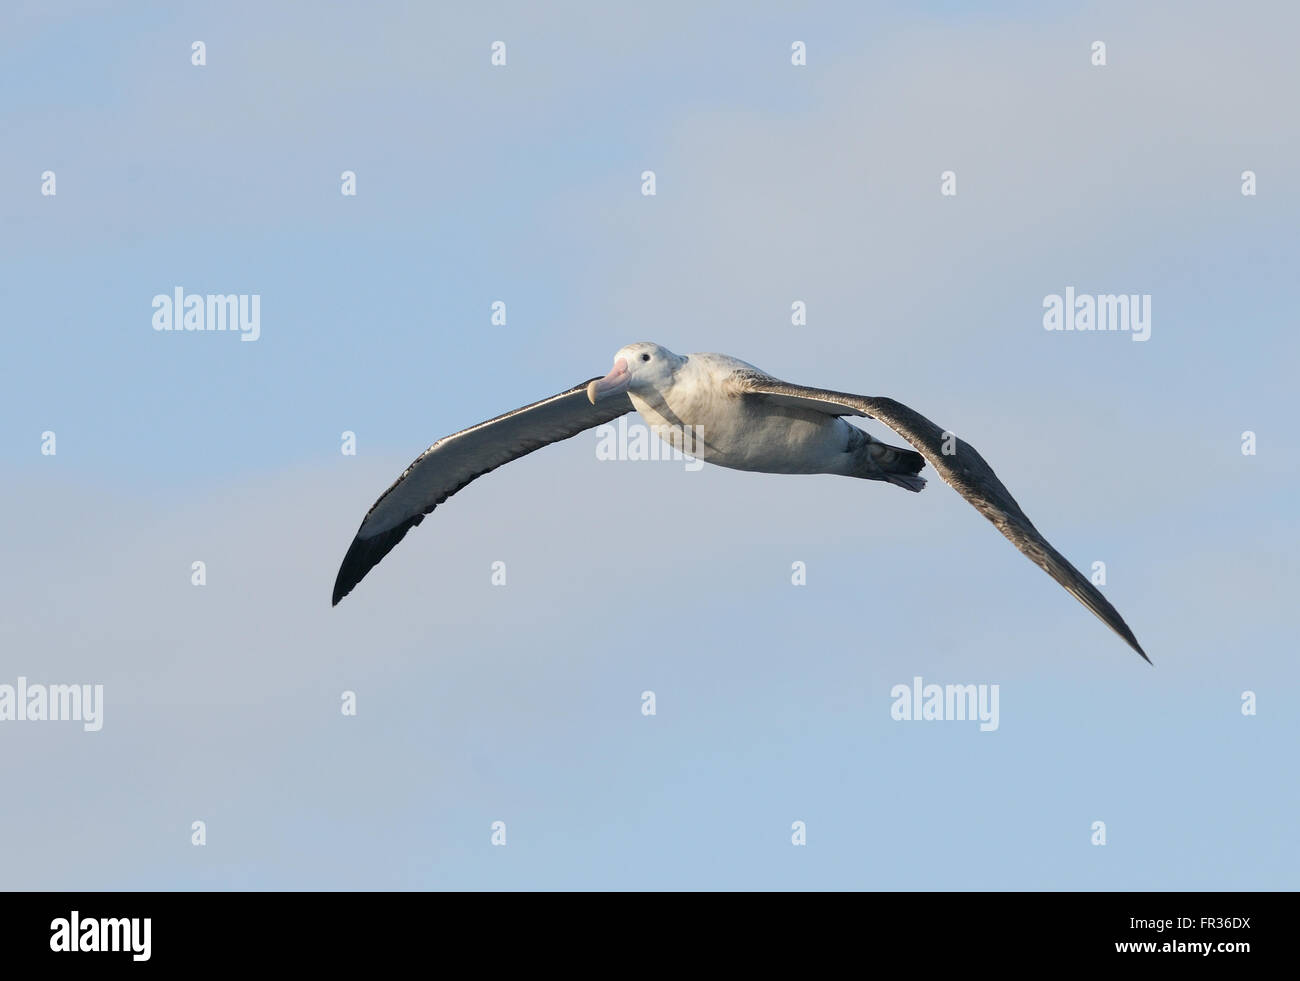 L'albatros hurleur (Diomedea exulans) en vol. Le sud de l'océan, la Géorgie du Sud. Banque D'Images